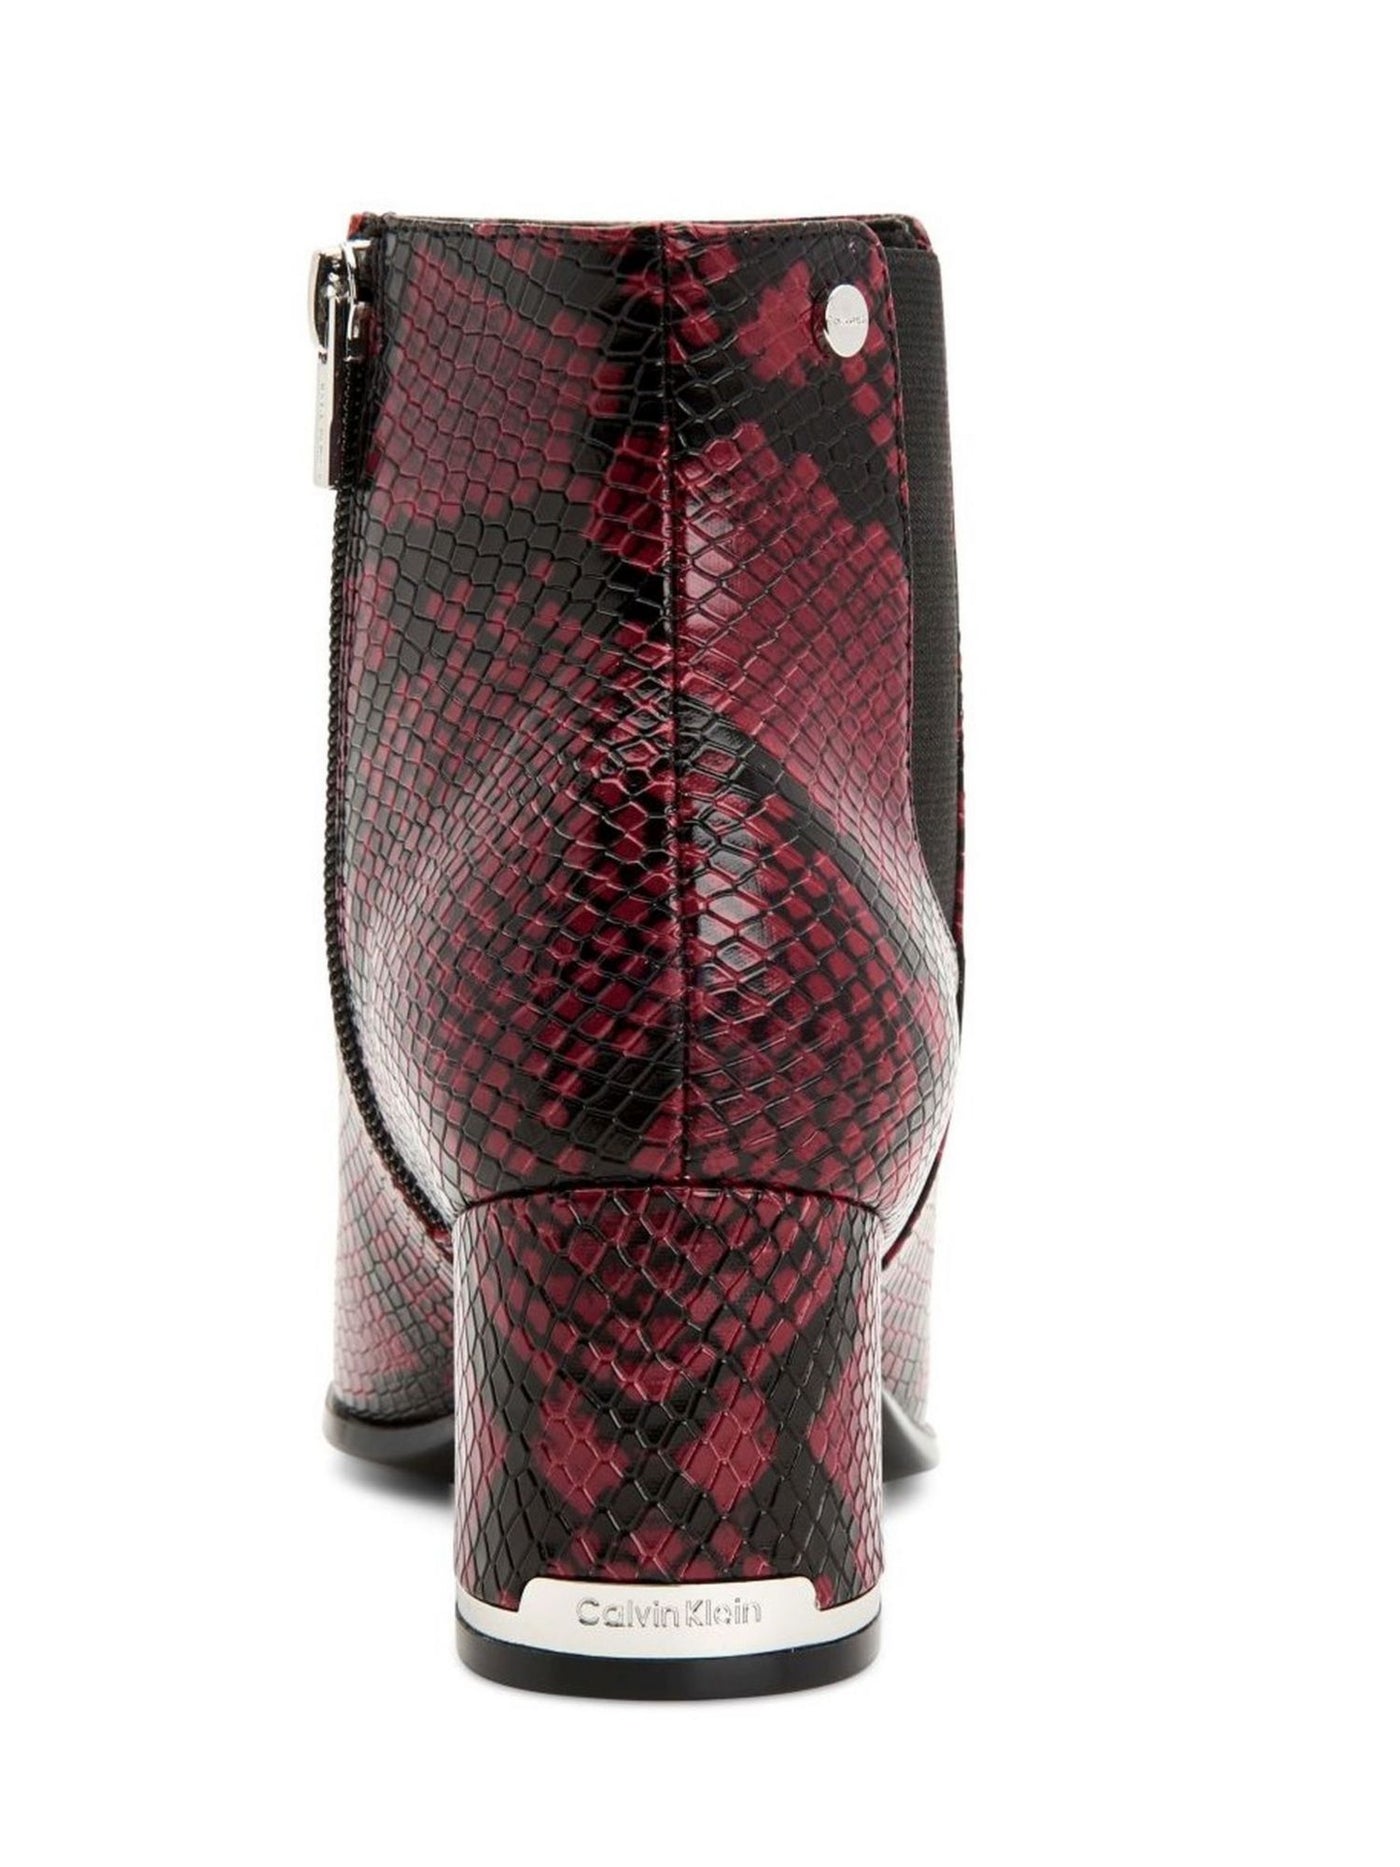 CALVIN KLEIN Womens Red Snake Goring Comfort Logo Fioranna Round Toe Block Heel Zip-Up Booties 7 M